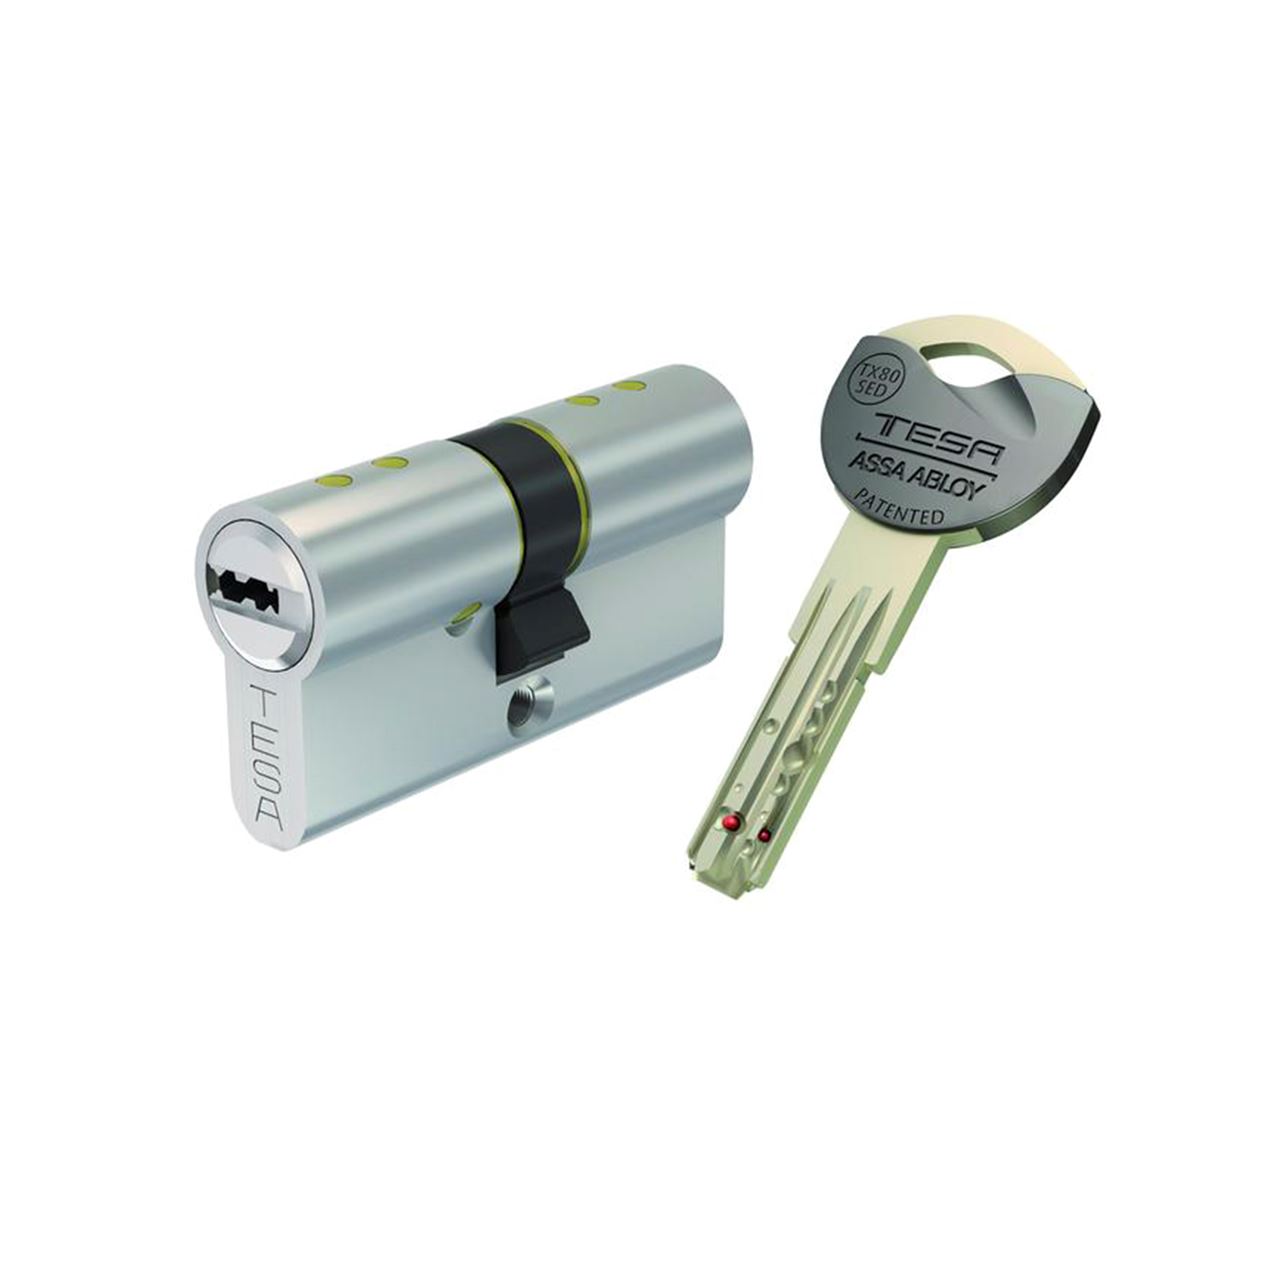  Tesa Assa Abloy Alta seguridad patentada TX853040N del cilindro  de la cerradura de llave del final de latón : Herramientas y Mejoras del  Hogar